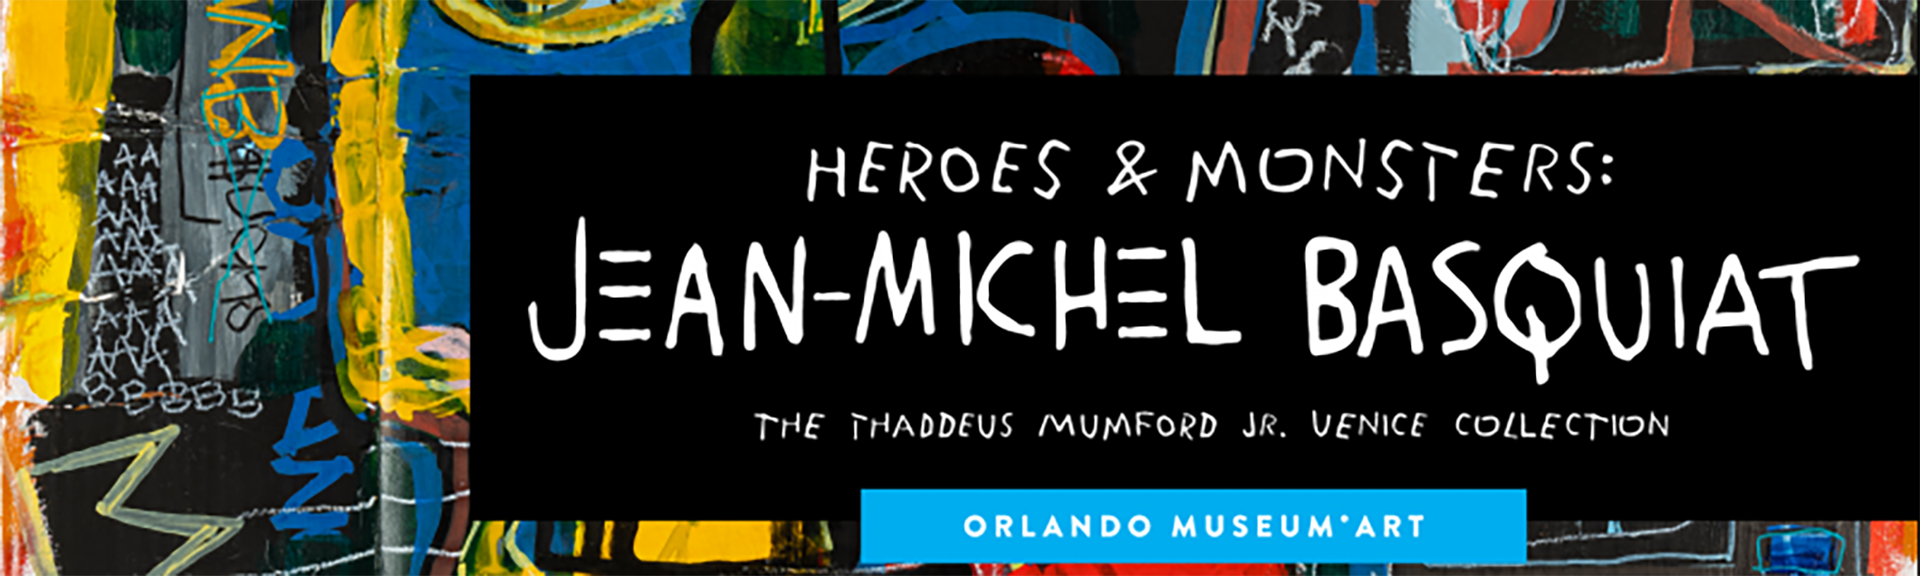 Flyer de la muestra Basquiat en el Museo de Orlando